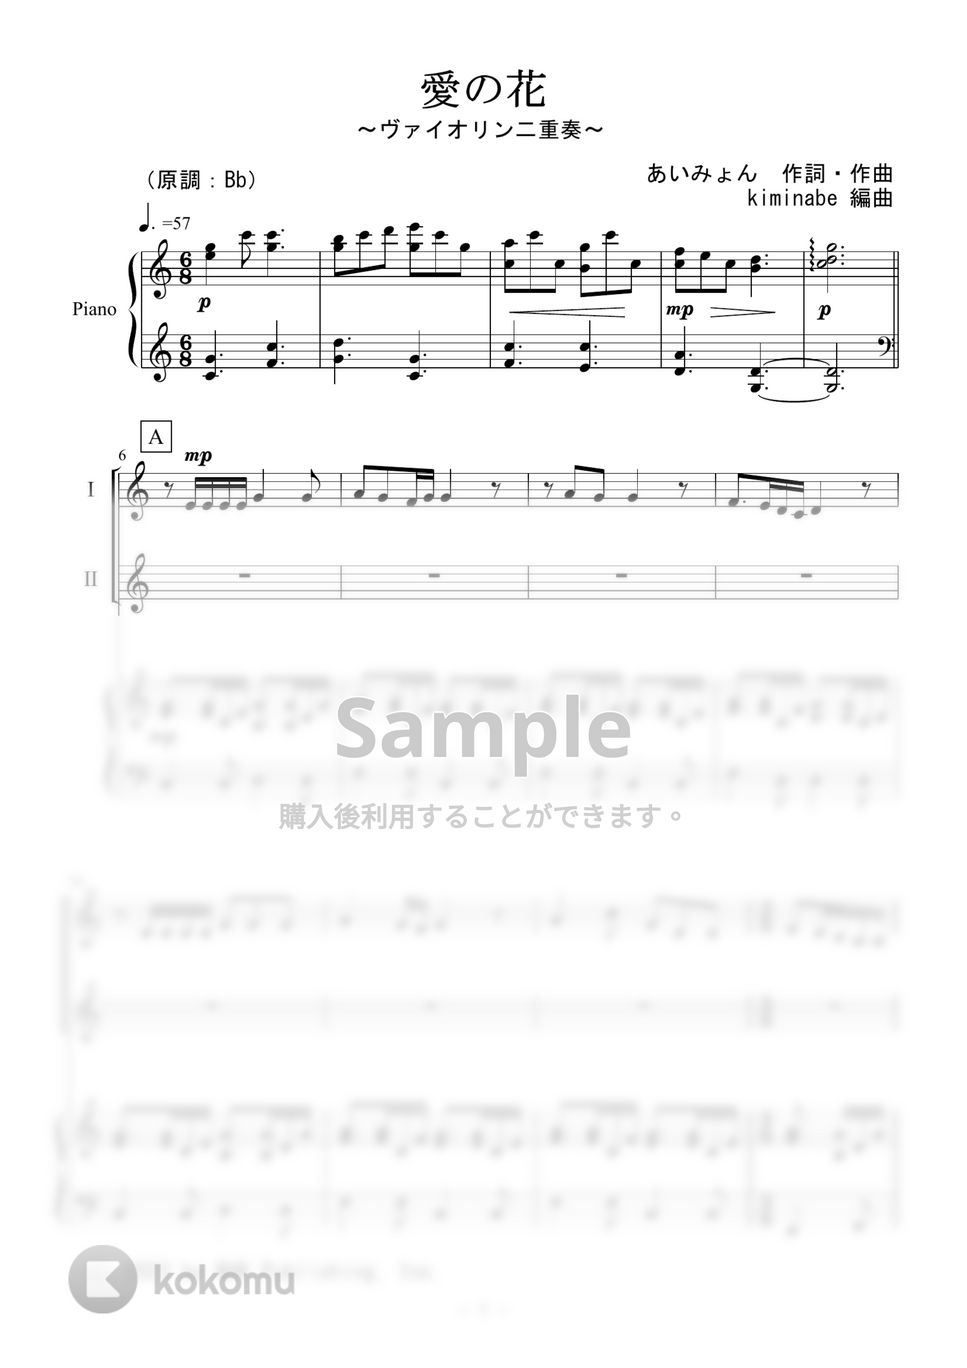 あいみょん - 愛の花 (ヴァイオリン二重奏) by kiminabe